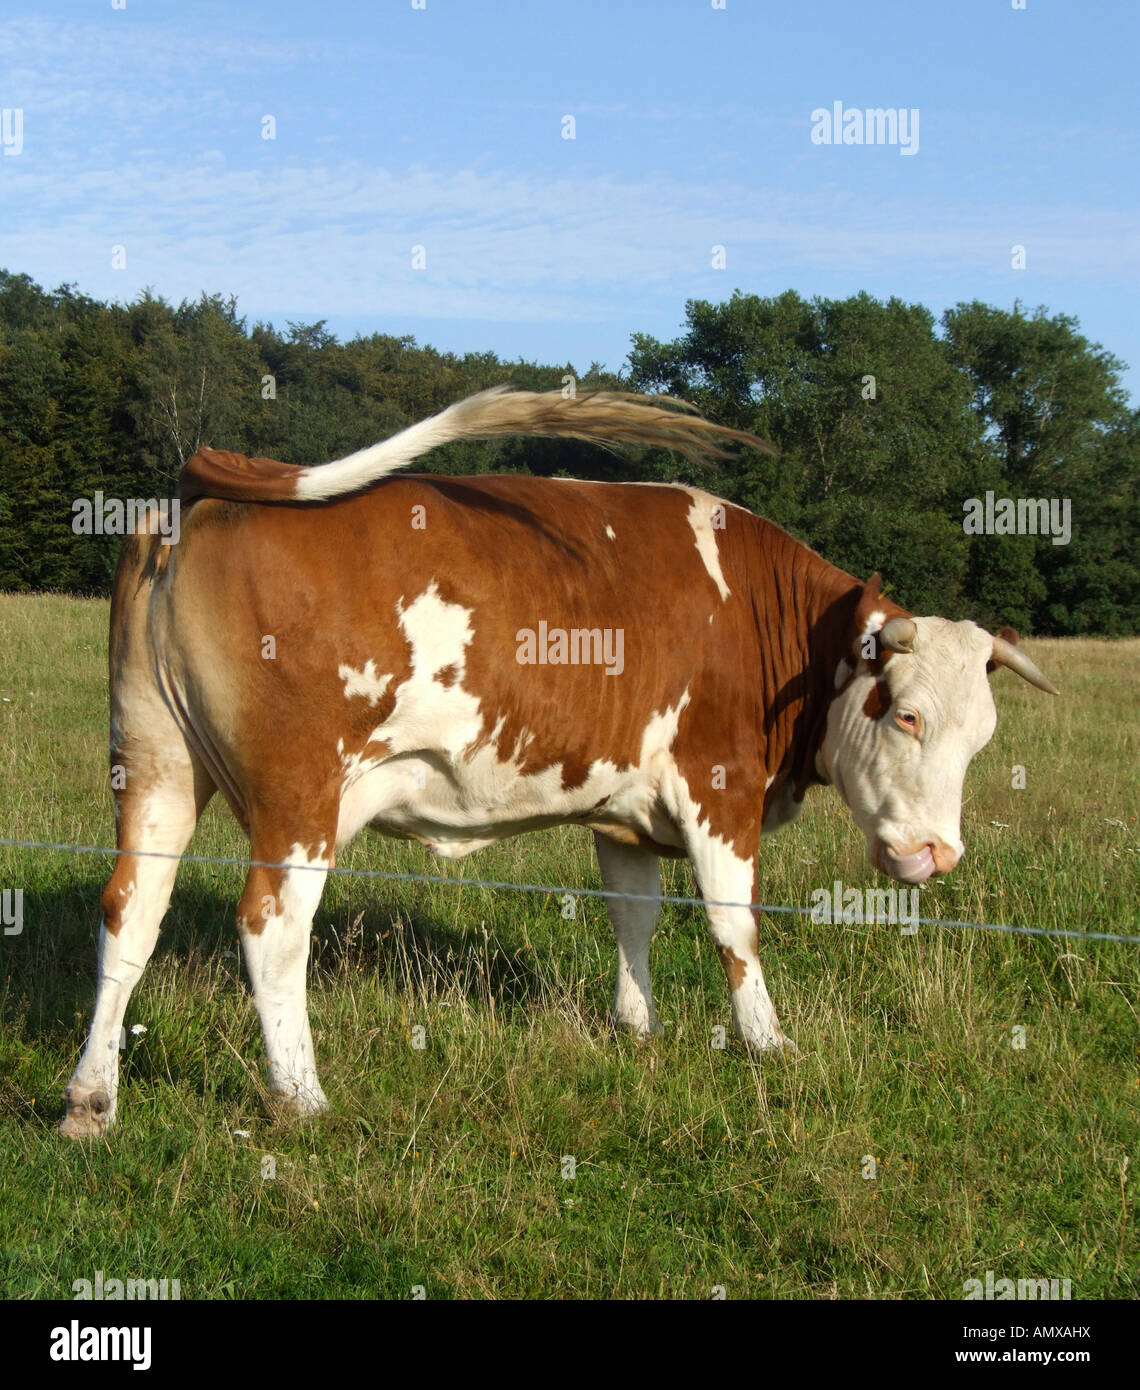 Cow on pasture Stock Photo